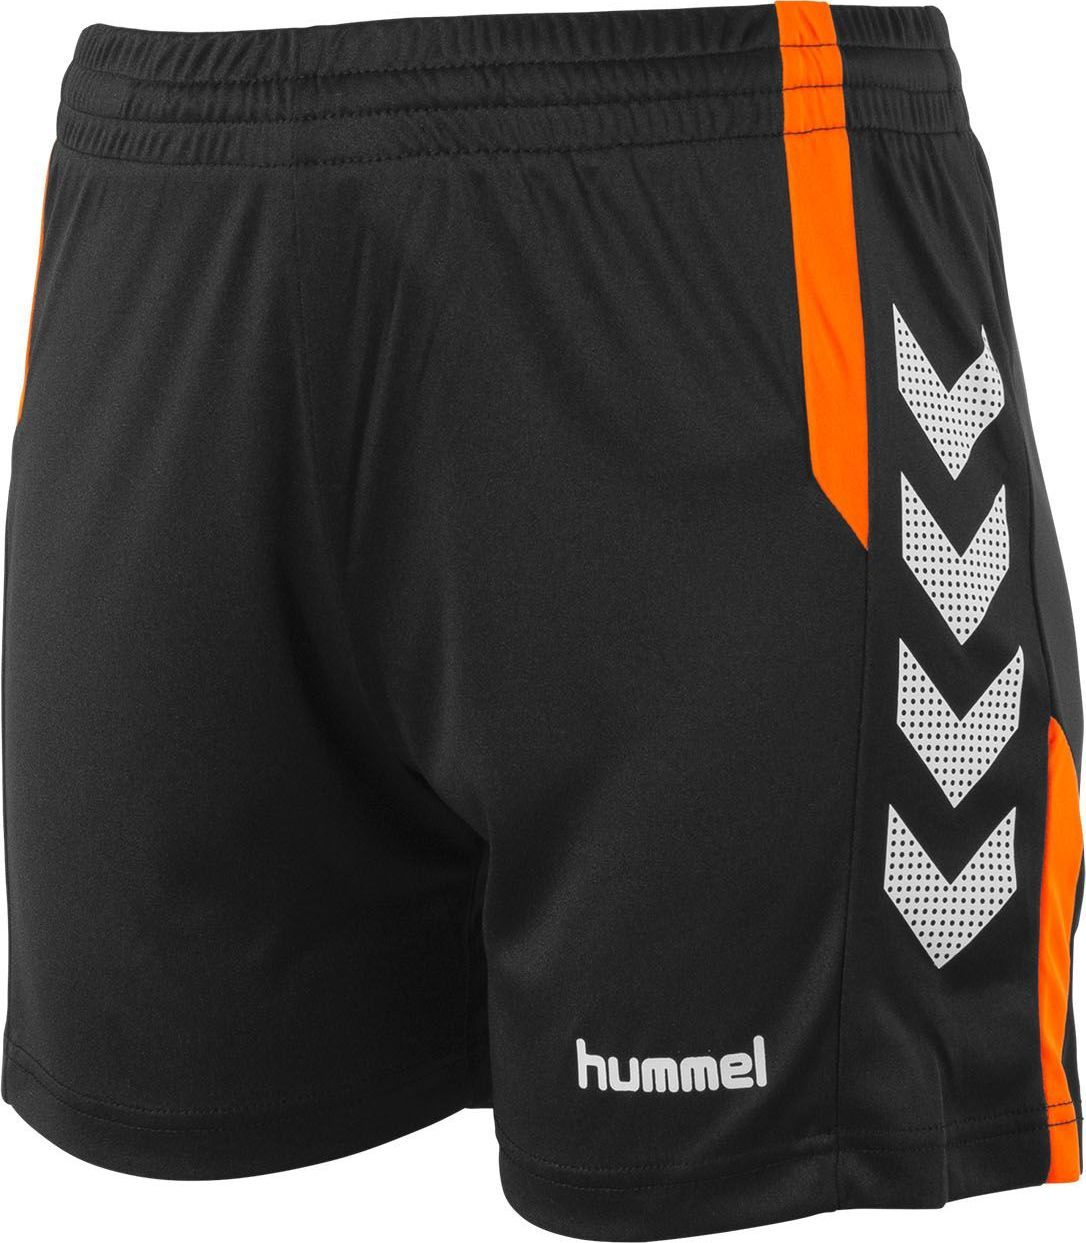 Continu Beschikbaar insect Hummel Aarhus Short voor Dames | Zwart - Fluo Oranje | Teamswear